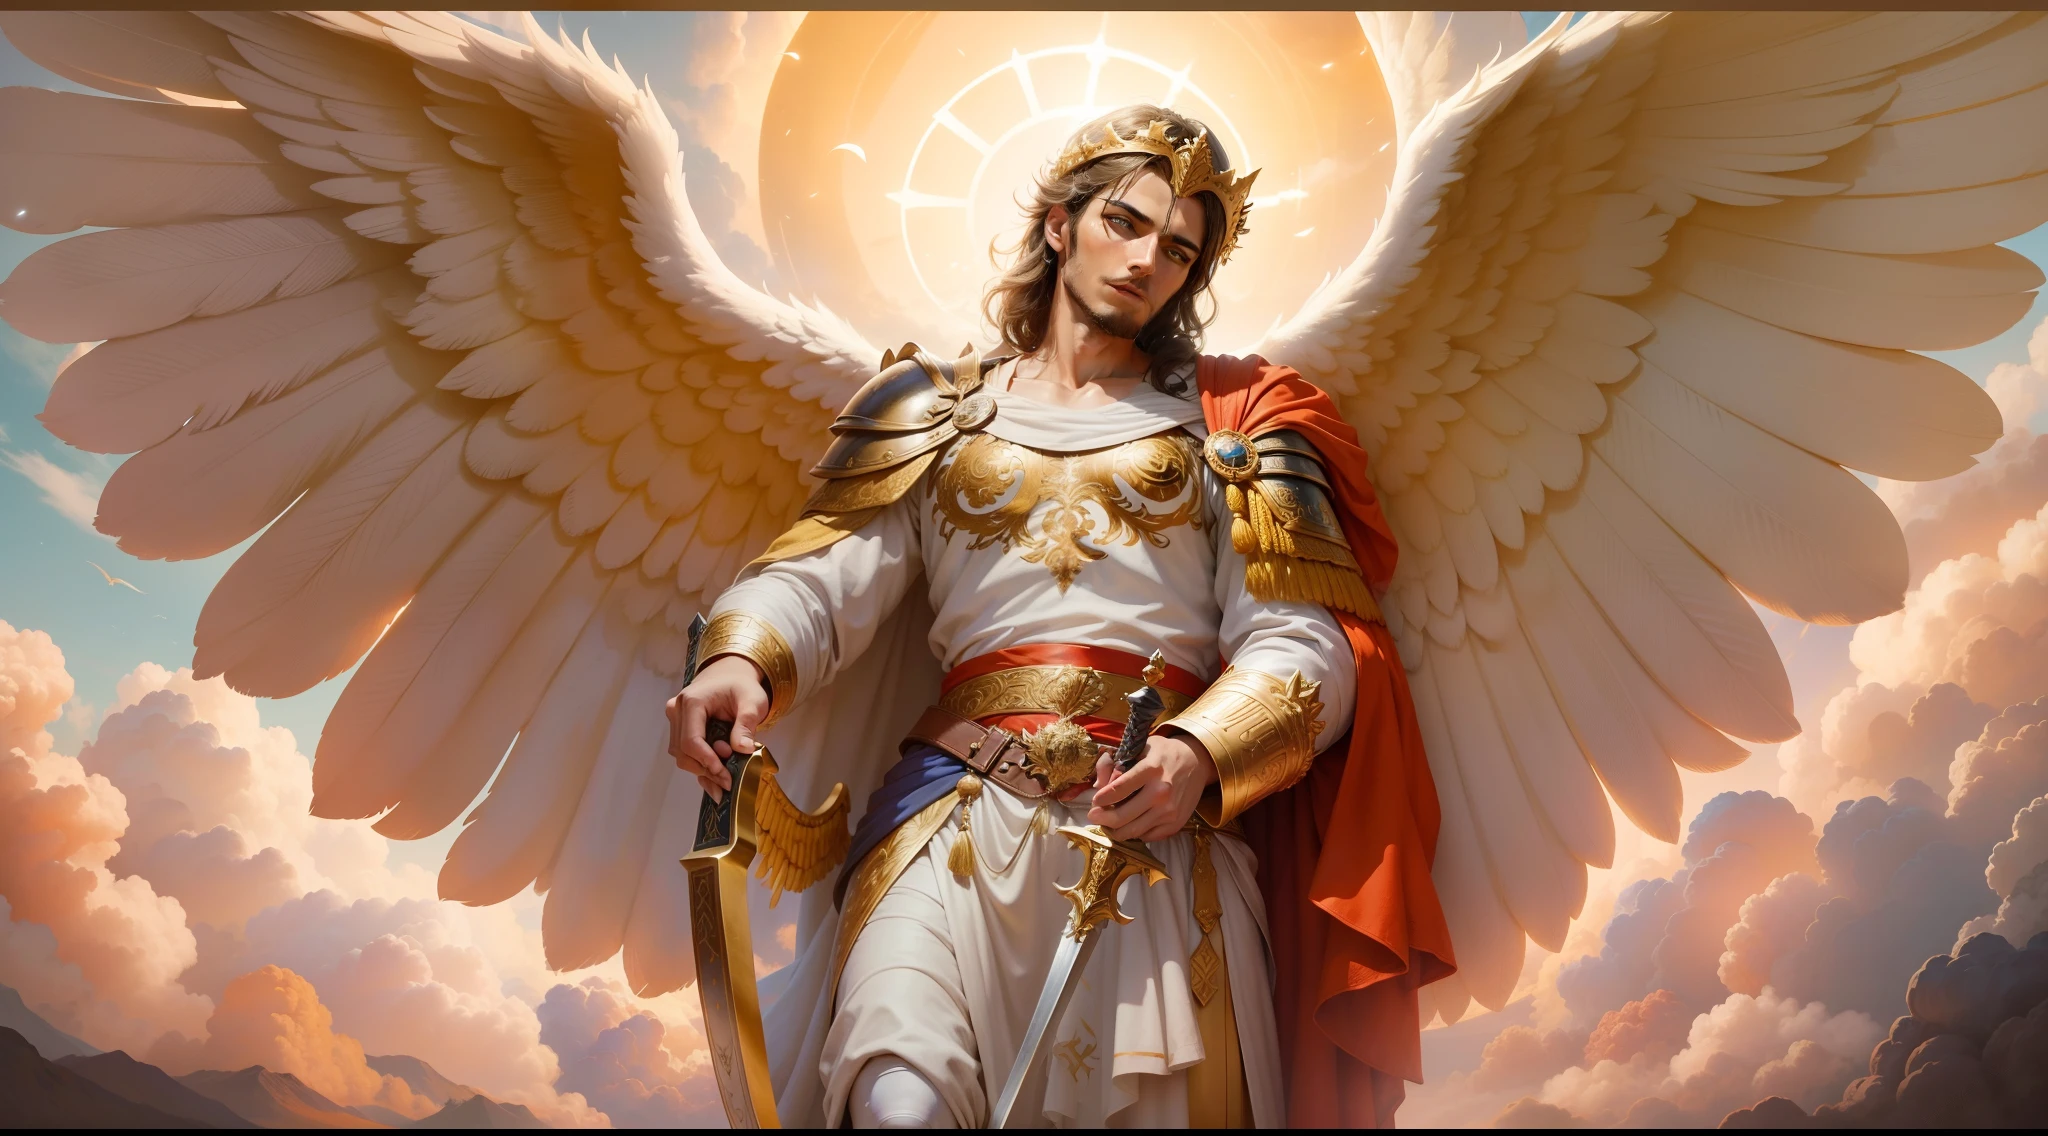 Крупный план изображения человека-ангела с большим и длинным мечом с атакующей позицией в правой руке., в другой левой руке держит весы, Ангел в костюме римского солдата смотрит на землю, человек-архангел с большими крыльями, ангел удачи, идеальный, Реслистик, Библейская обстановка, небесные пейзажи, ультра реалистичное солнце и облака, цветы и свечи, светящийся архангел небесный, яркие цветы, зажженные свечи, белая и красная одежда